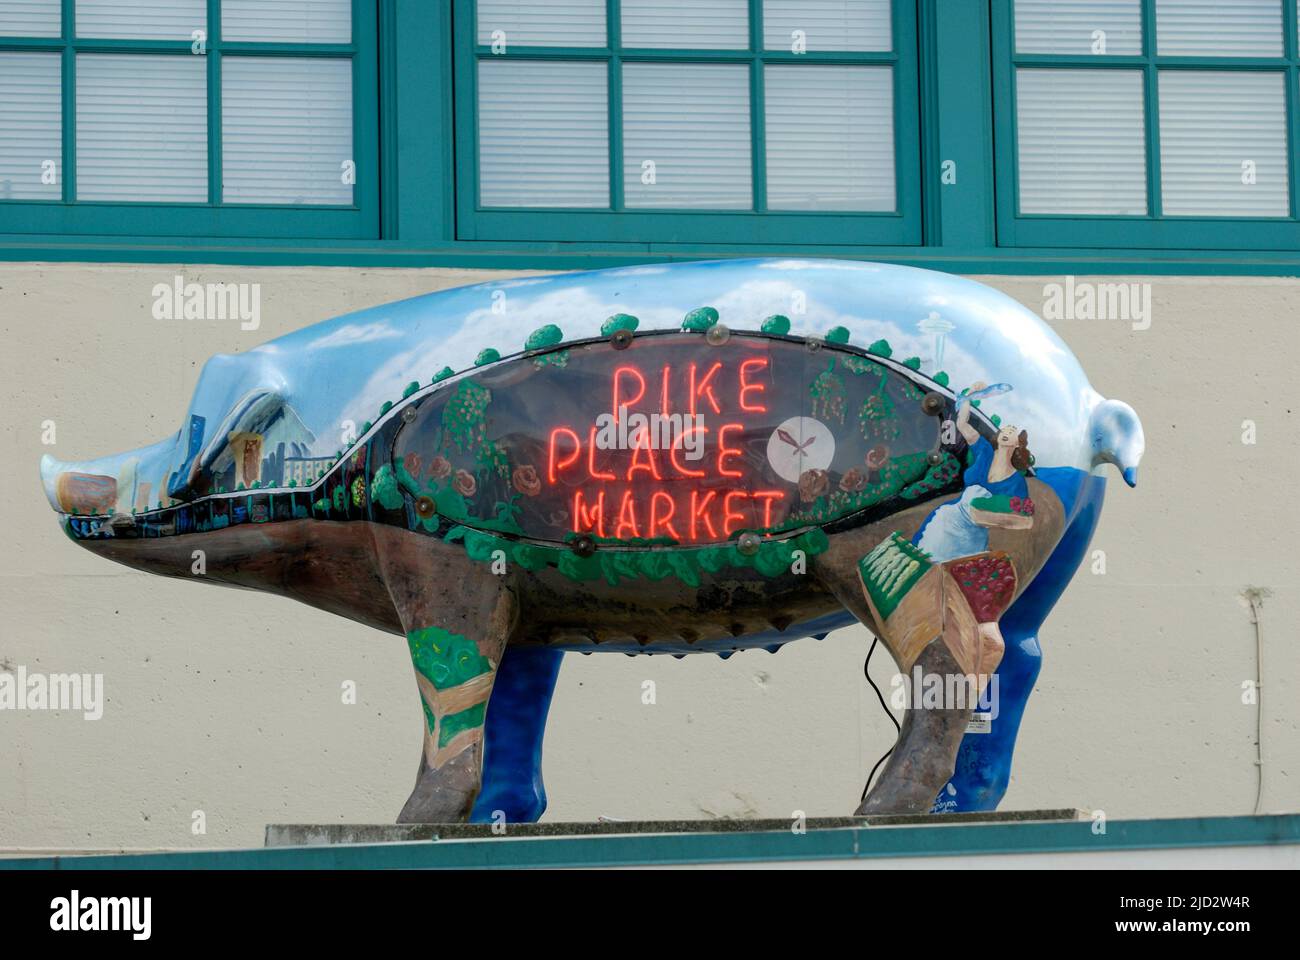 Un cochon modèle fait la promotion du marché historique de Pike place. Banque D'Images